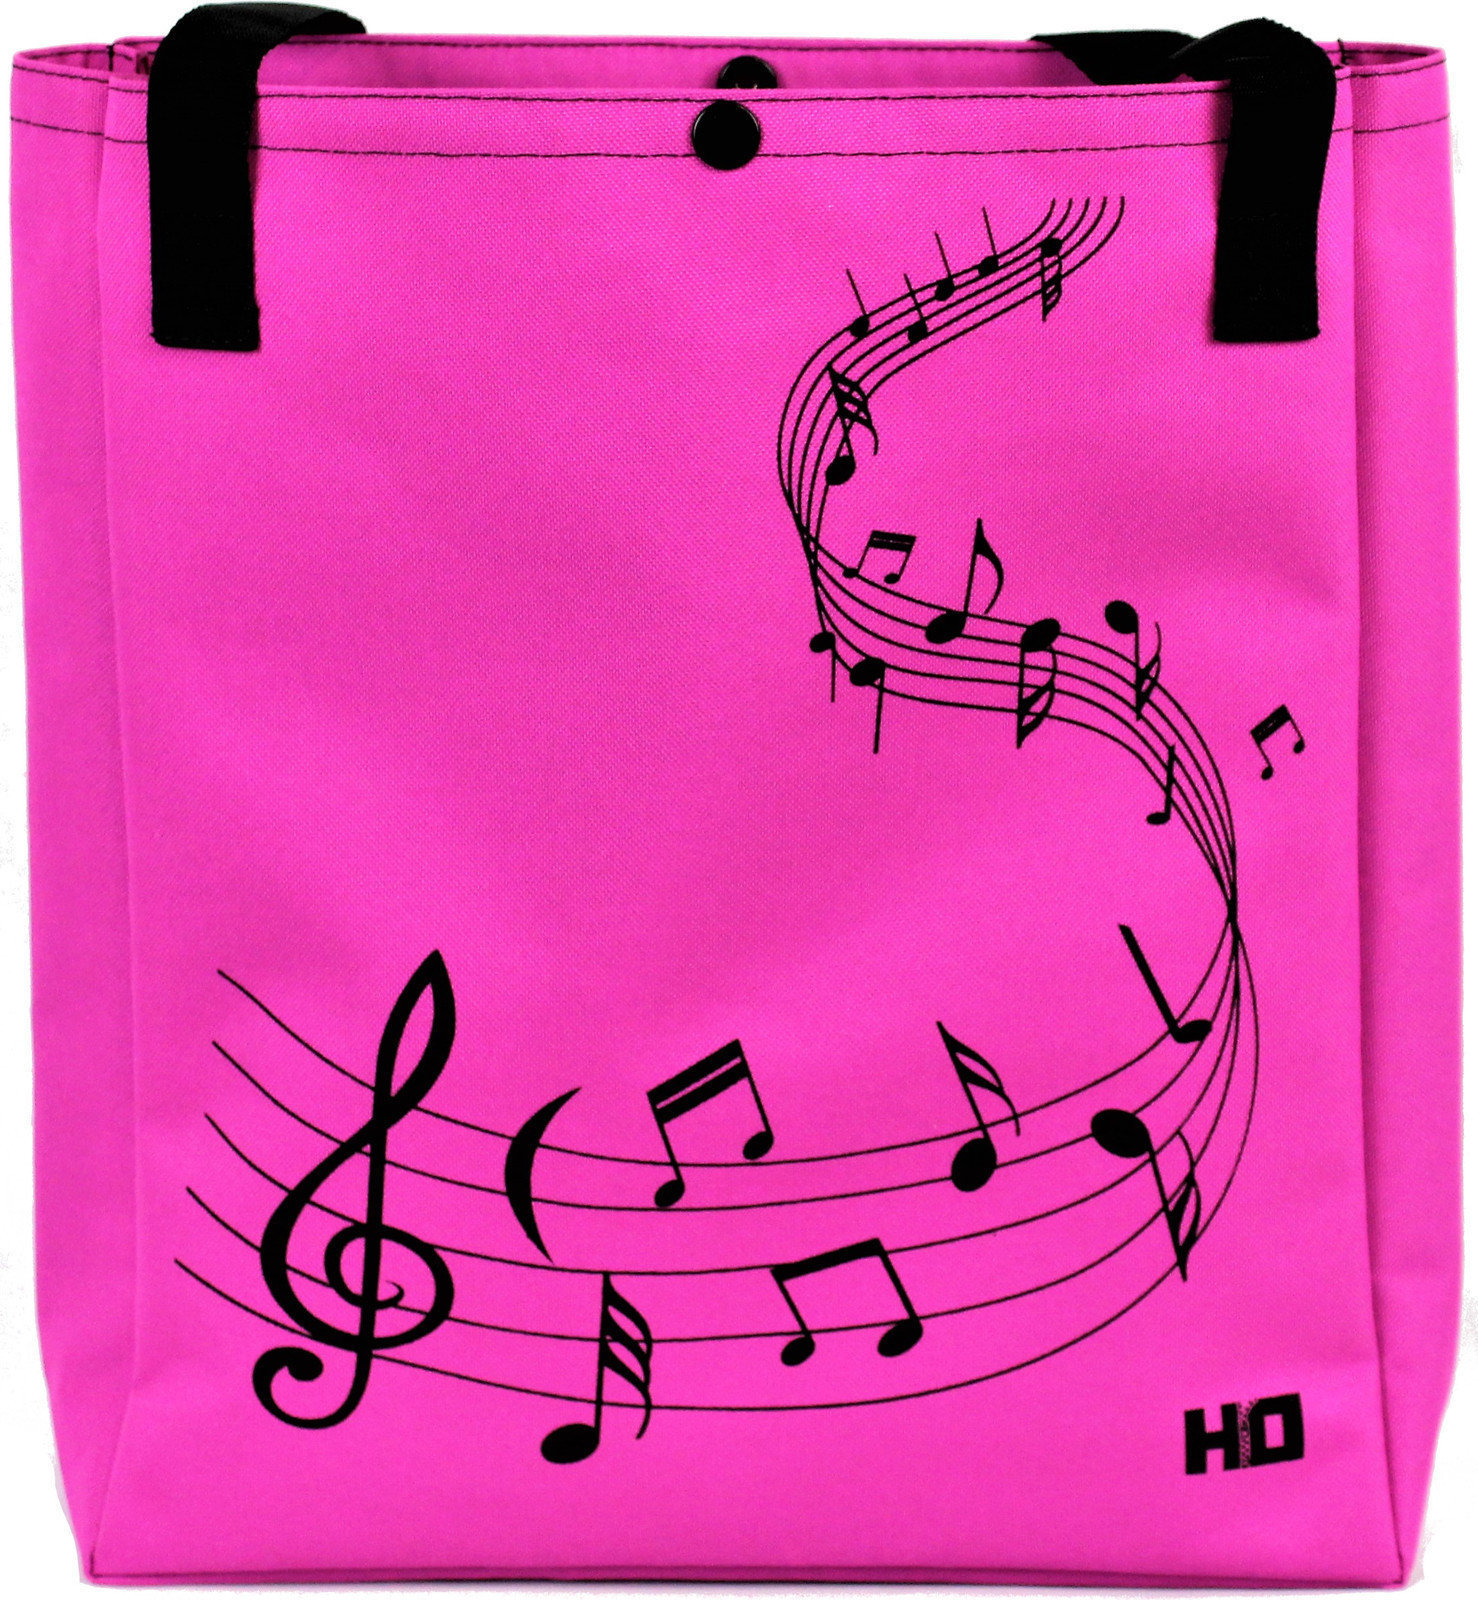 Shopping Bag Hudební Obaly H-O TNKLL122 Melody Black-Pink